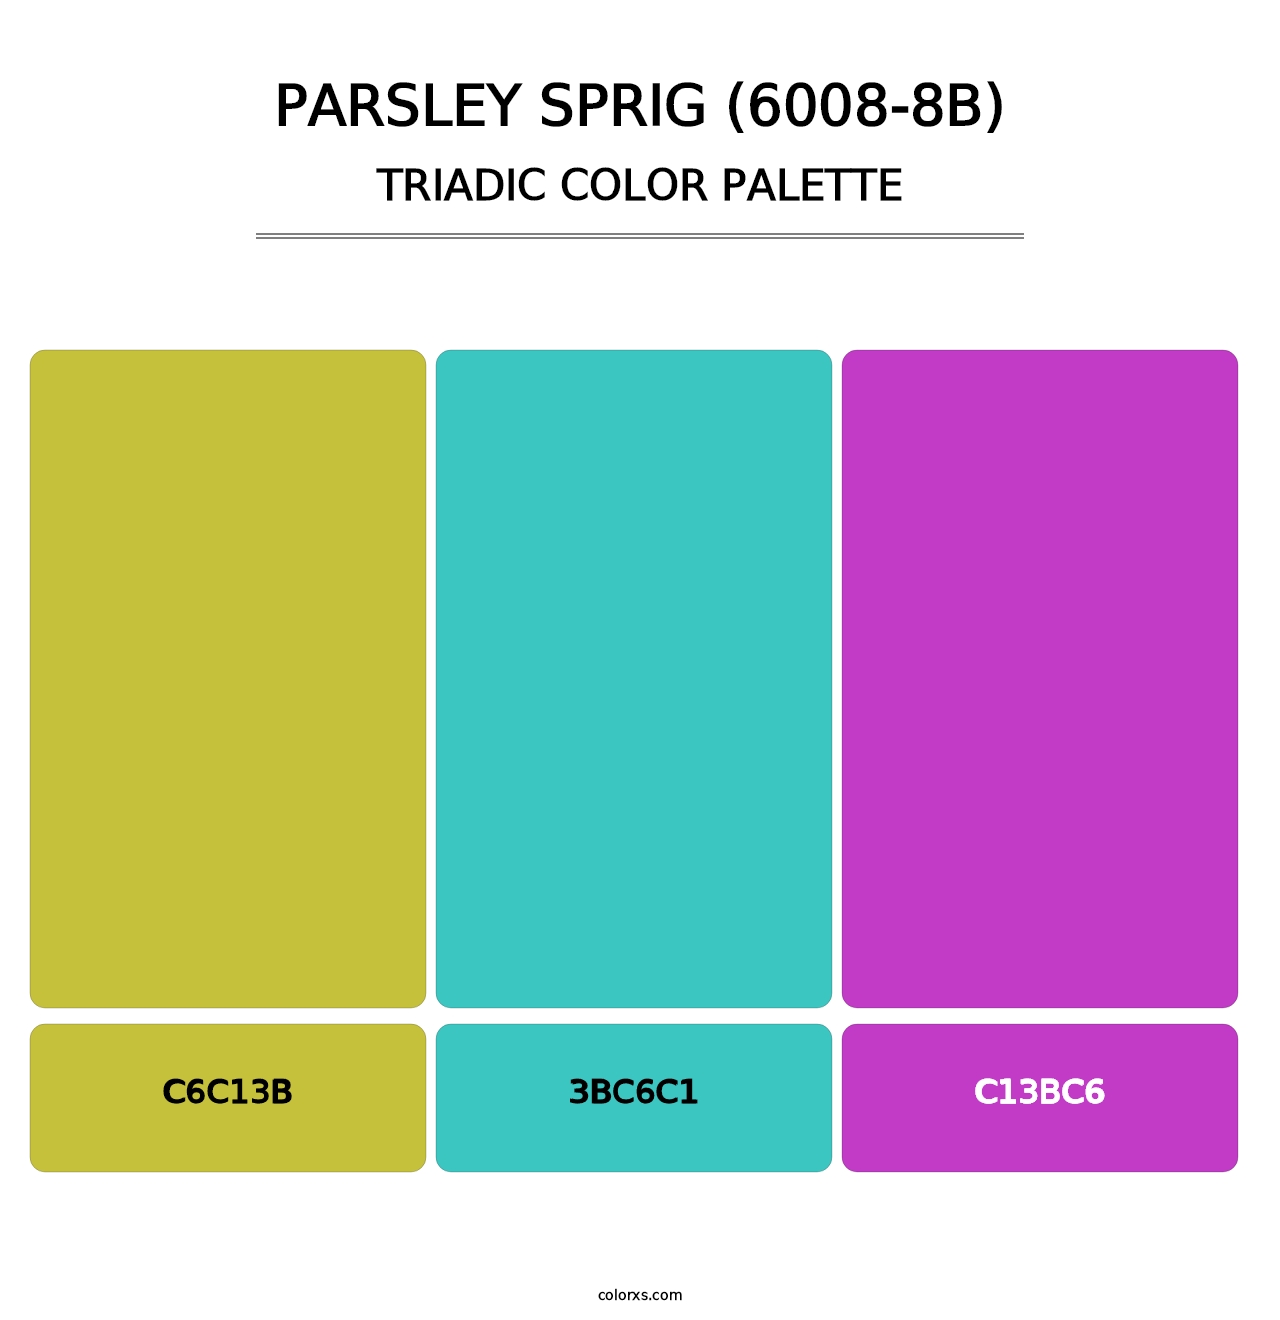 Parsley Sprig (6008-8B) - Triadic Color Palette